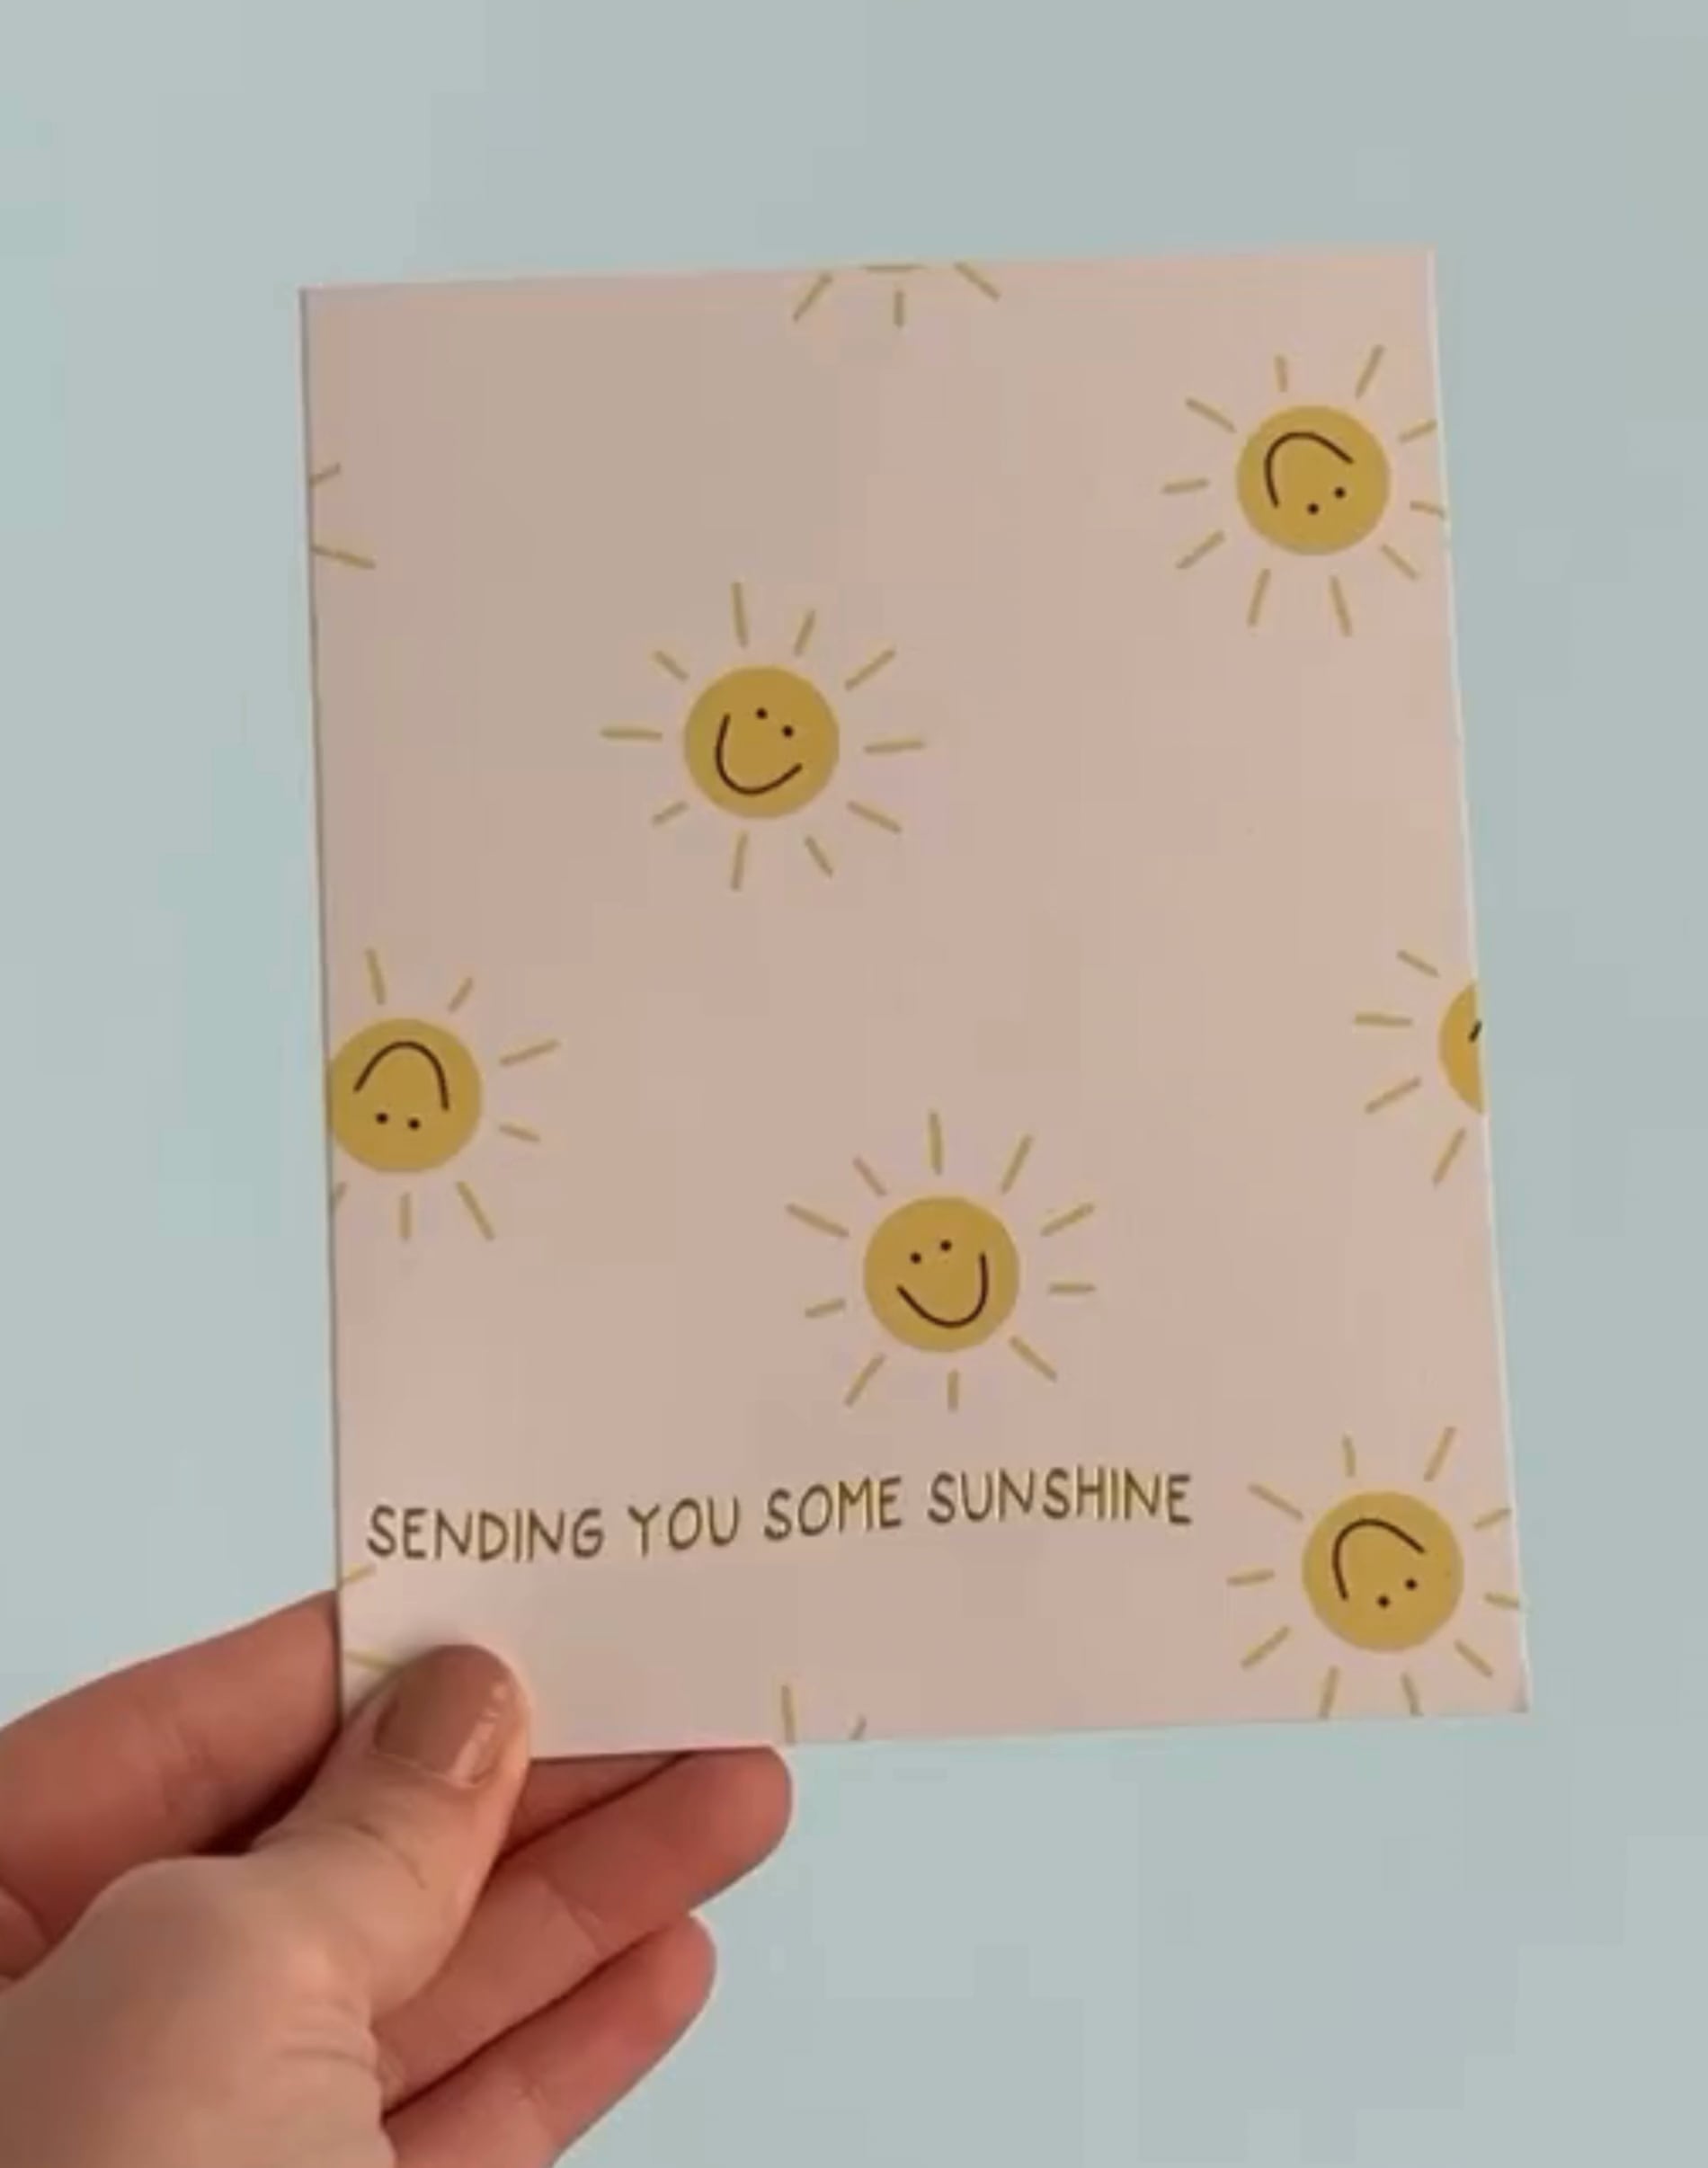 Sending Sunshine Greeting Card image